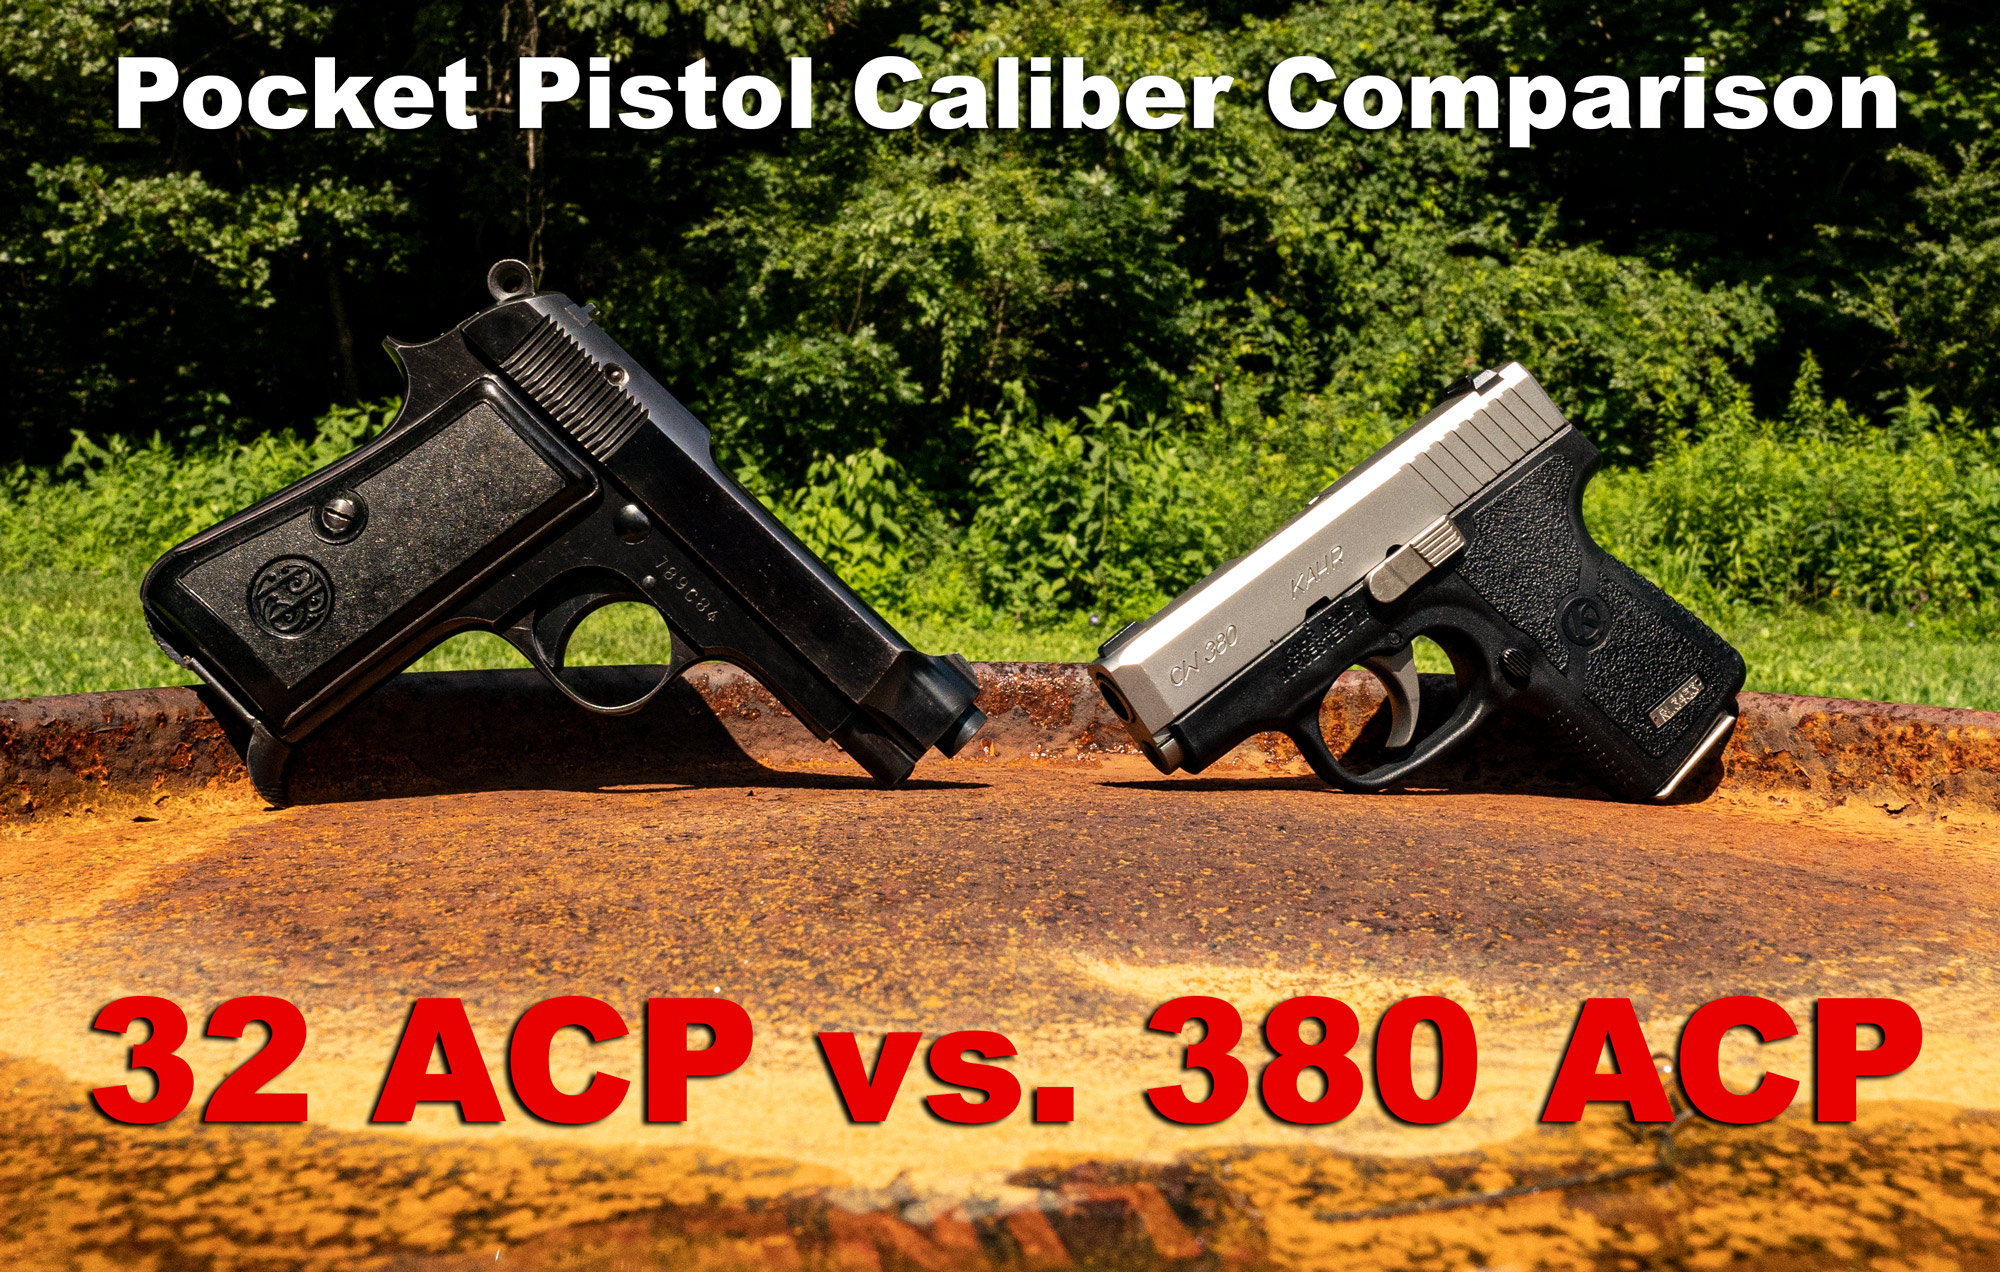 32 ACP vs 380 ACP pistols side by side